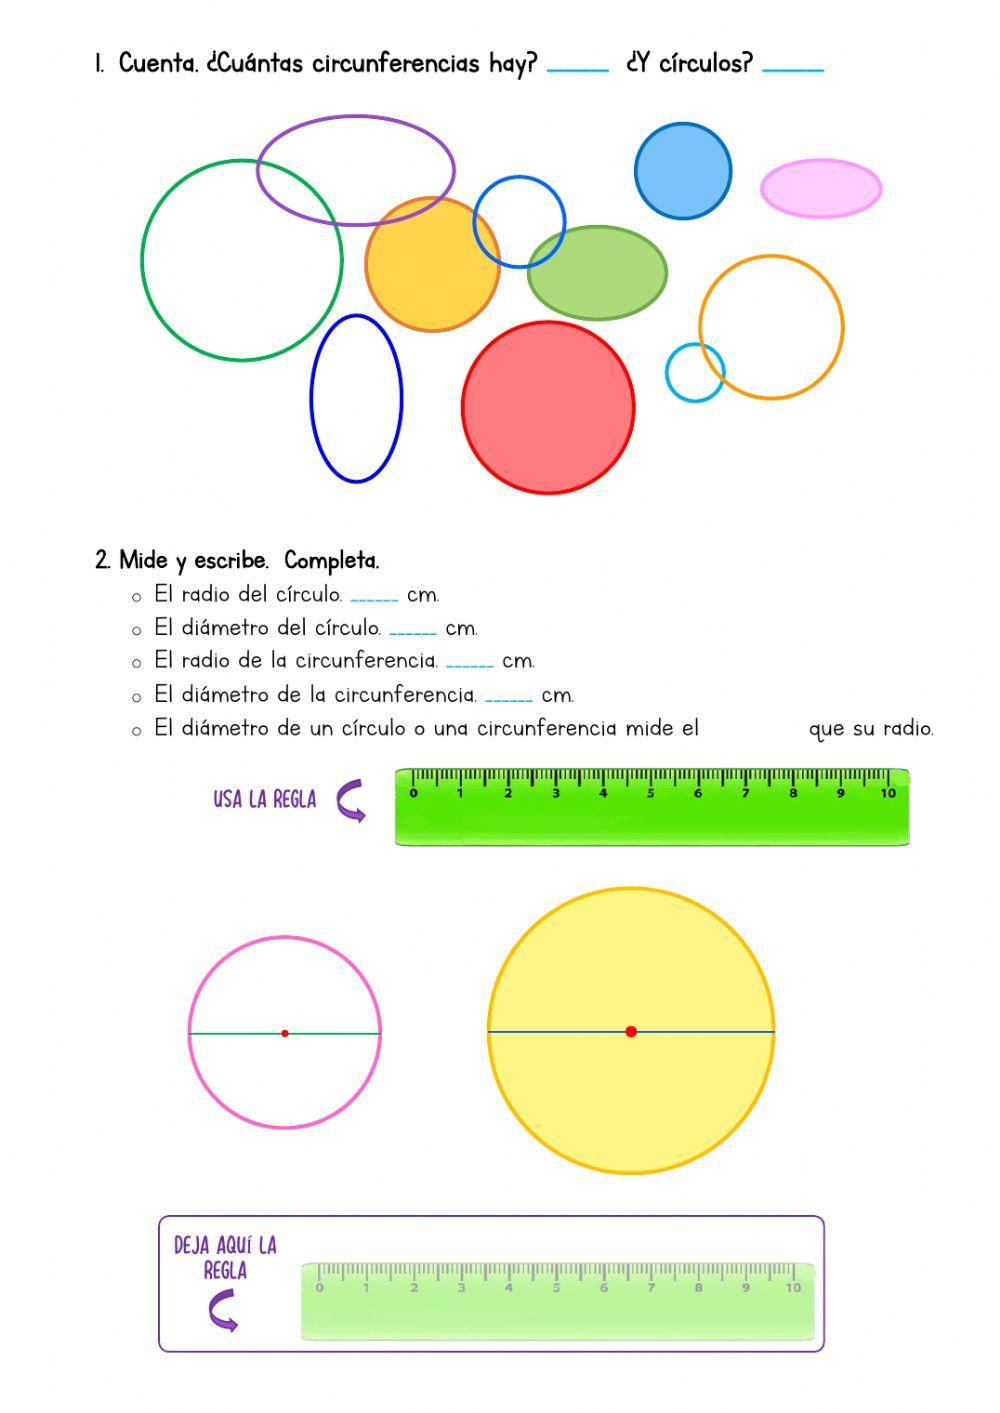 Cincunferencia y círculo